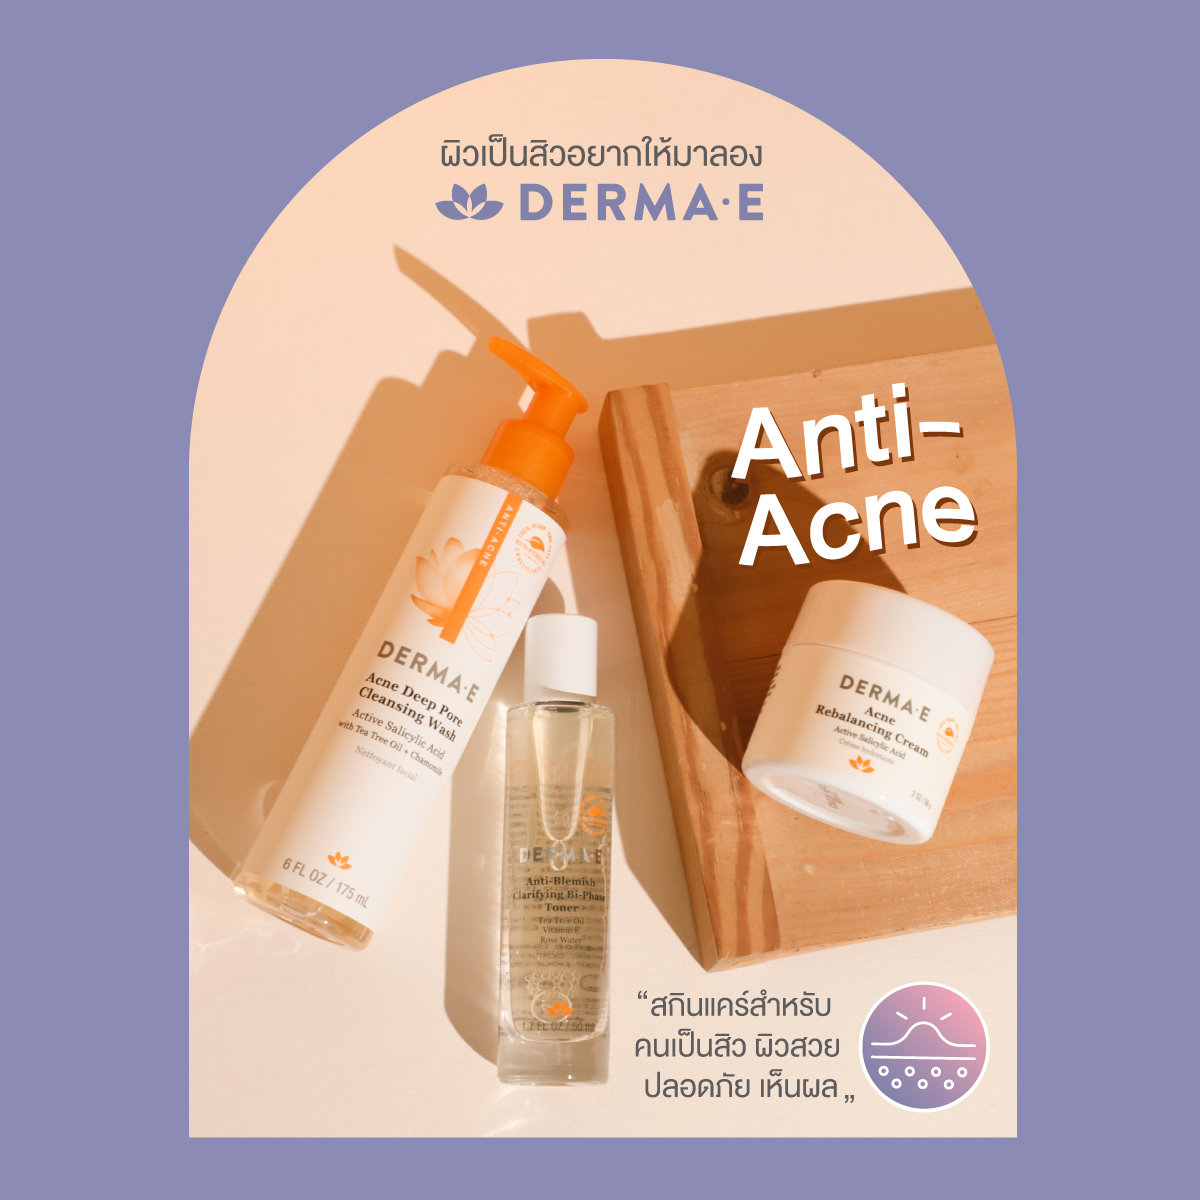 DERMA E : Anti-Acne Series ปรับสมดุลผิว จบปัญหาสิวอย่างตรงจุด